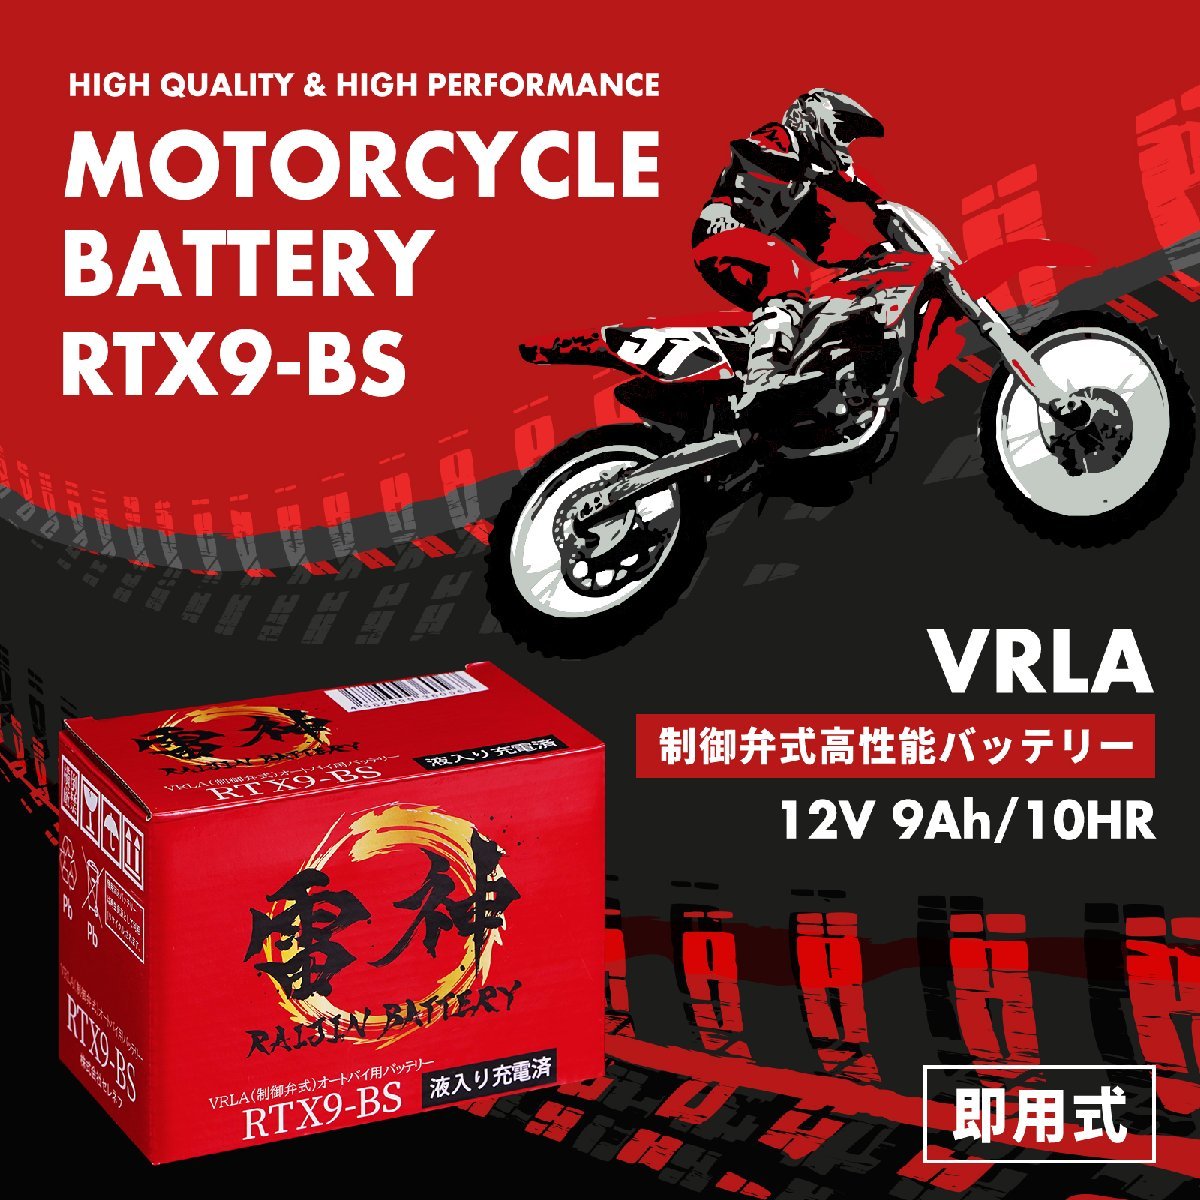 雷神バッテリー 高性能 VRLA(制御弁式) バイク用 バッテリー 液入り充電済 RTX9-BS(YTX9-BS / GTX9-BS / YTR9-BS / FTX9-BS / KTX9-BS互換)_画像2